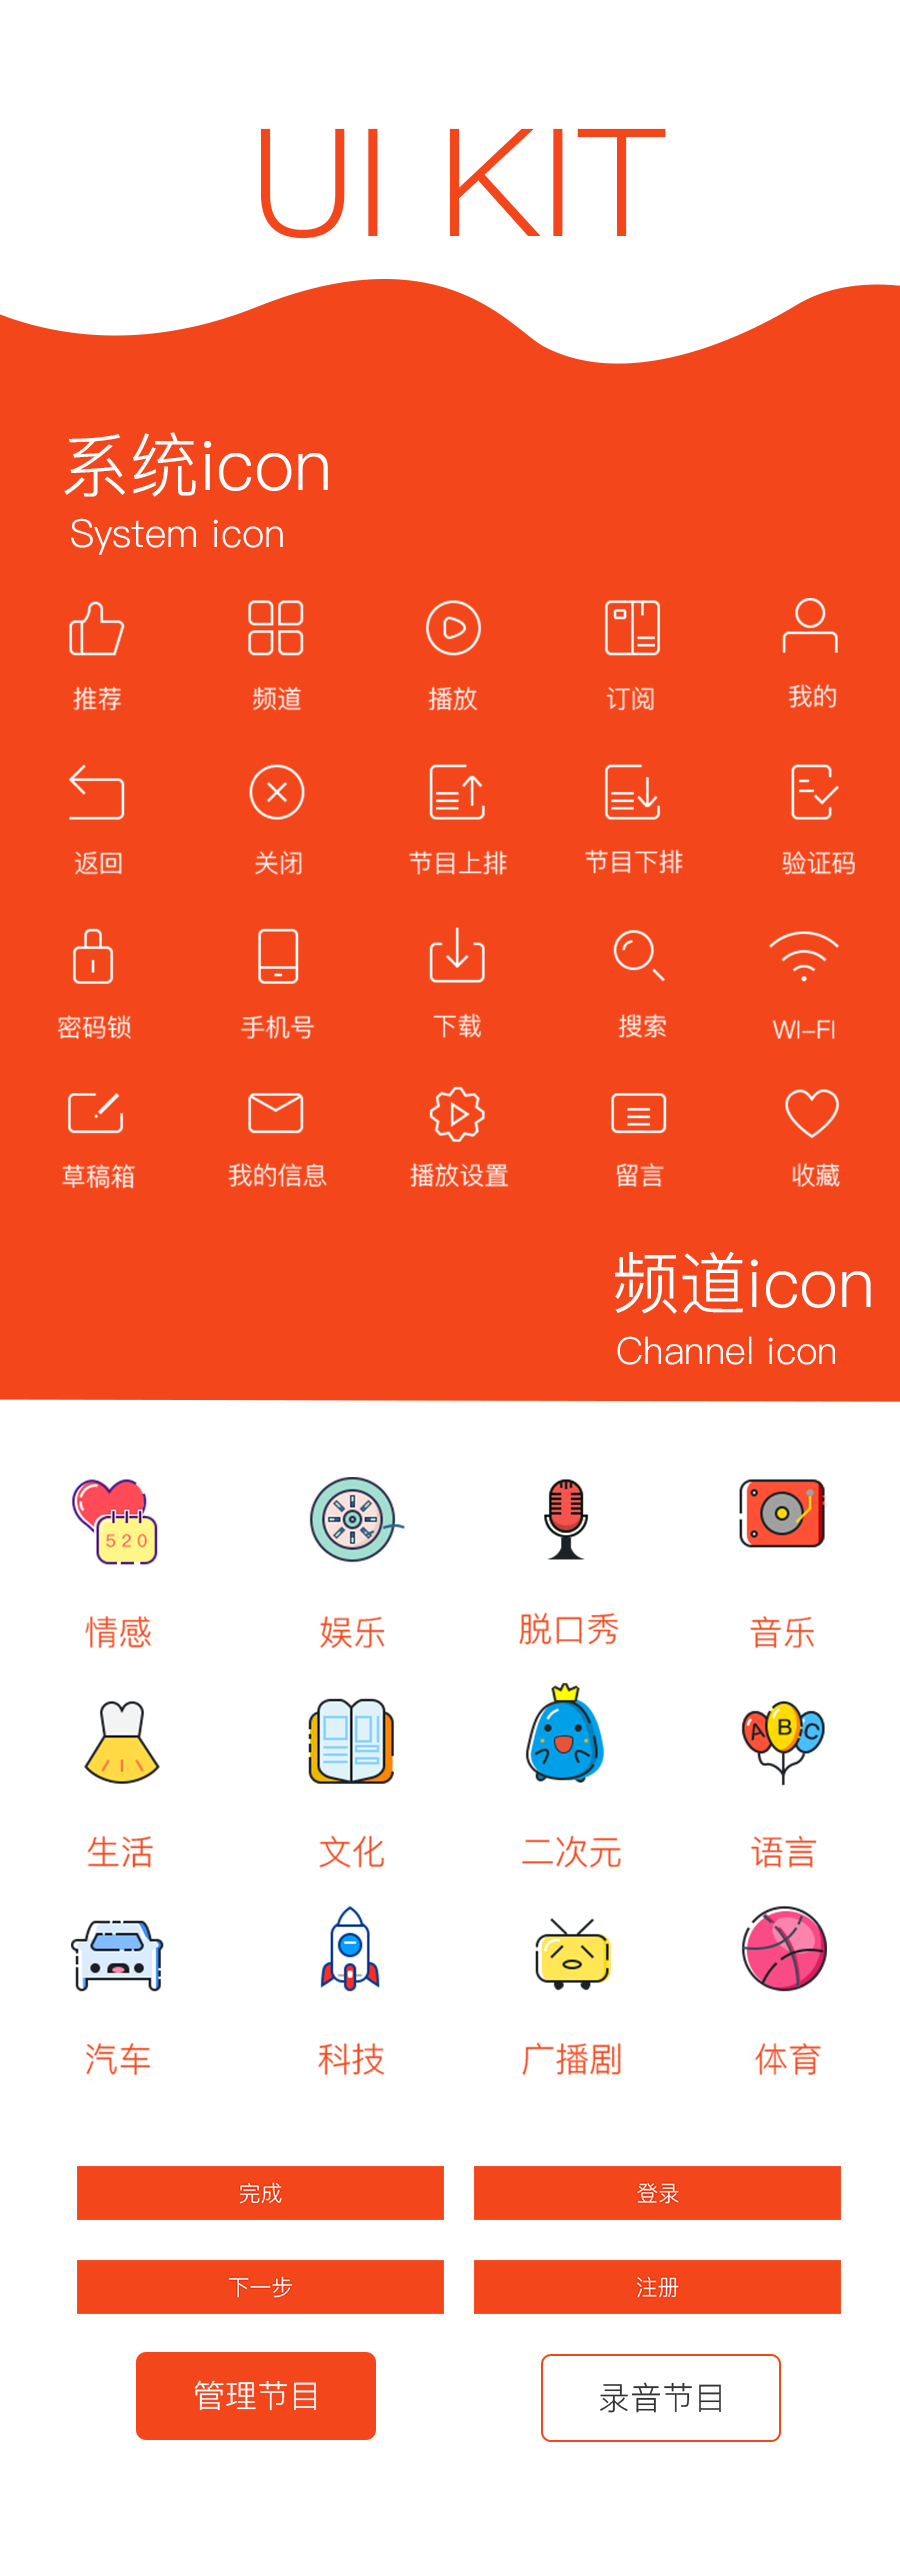 双鱼座FM app界面设计&设计规范ios-ui logo 